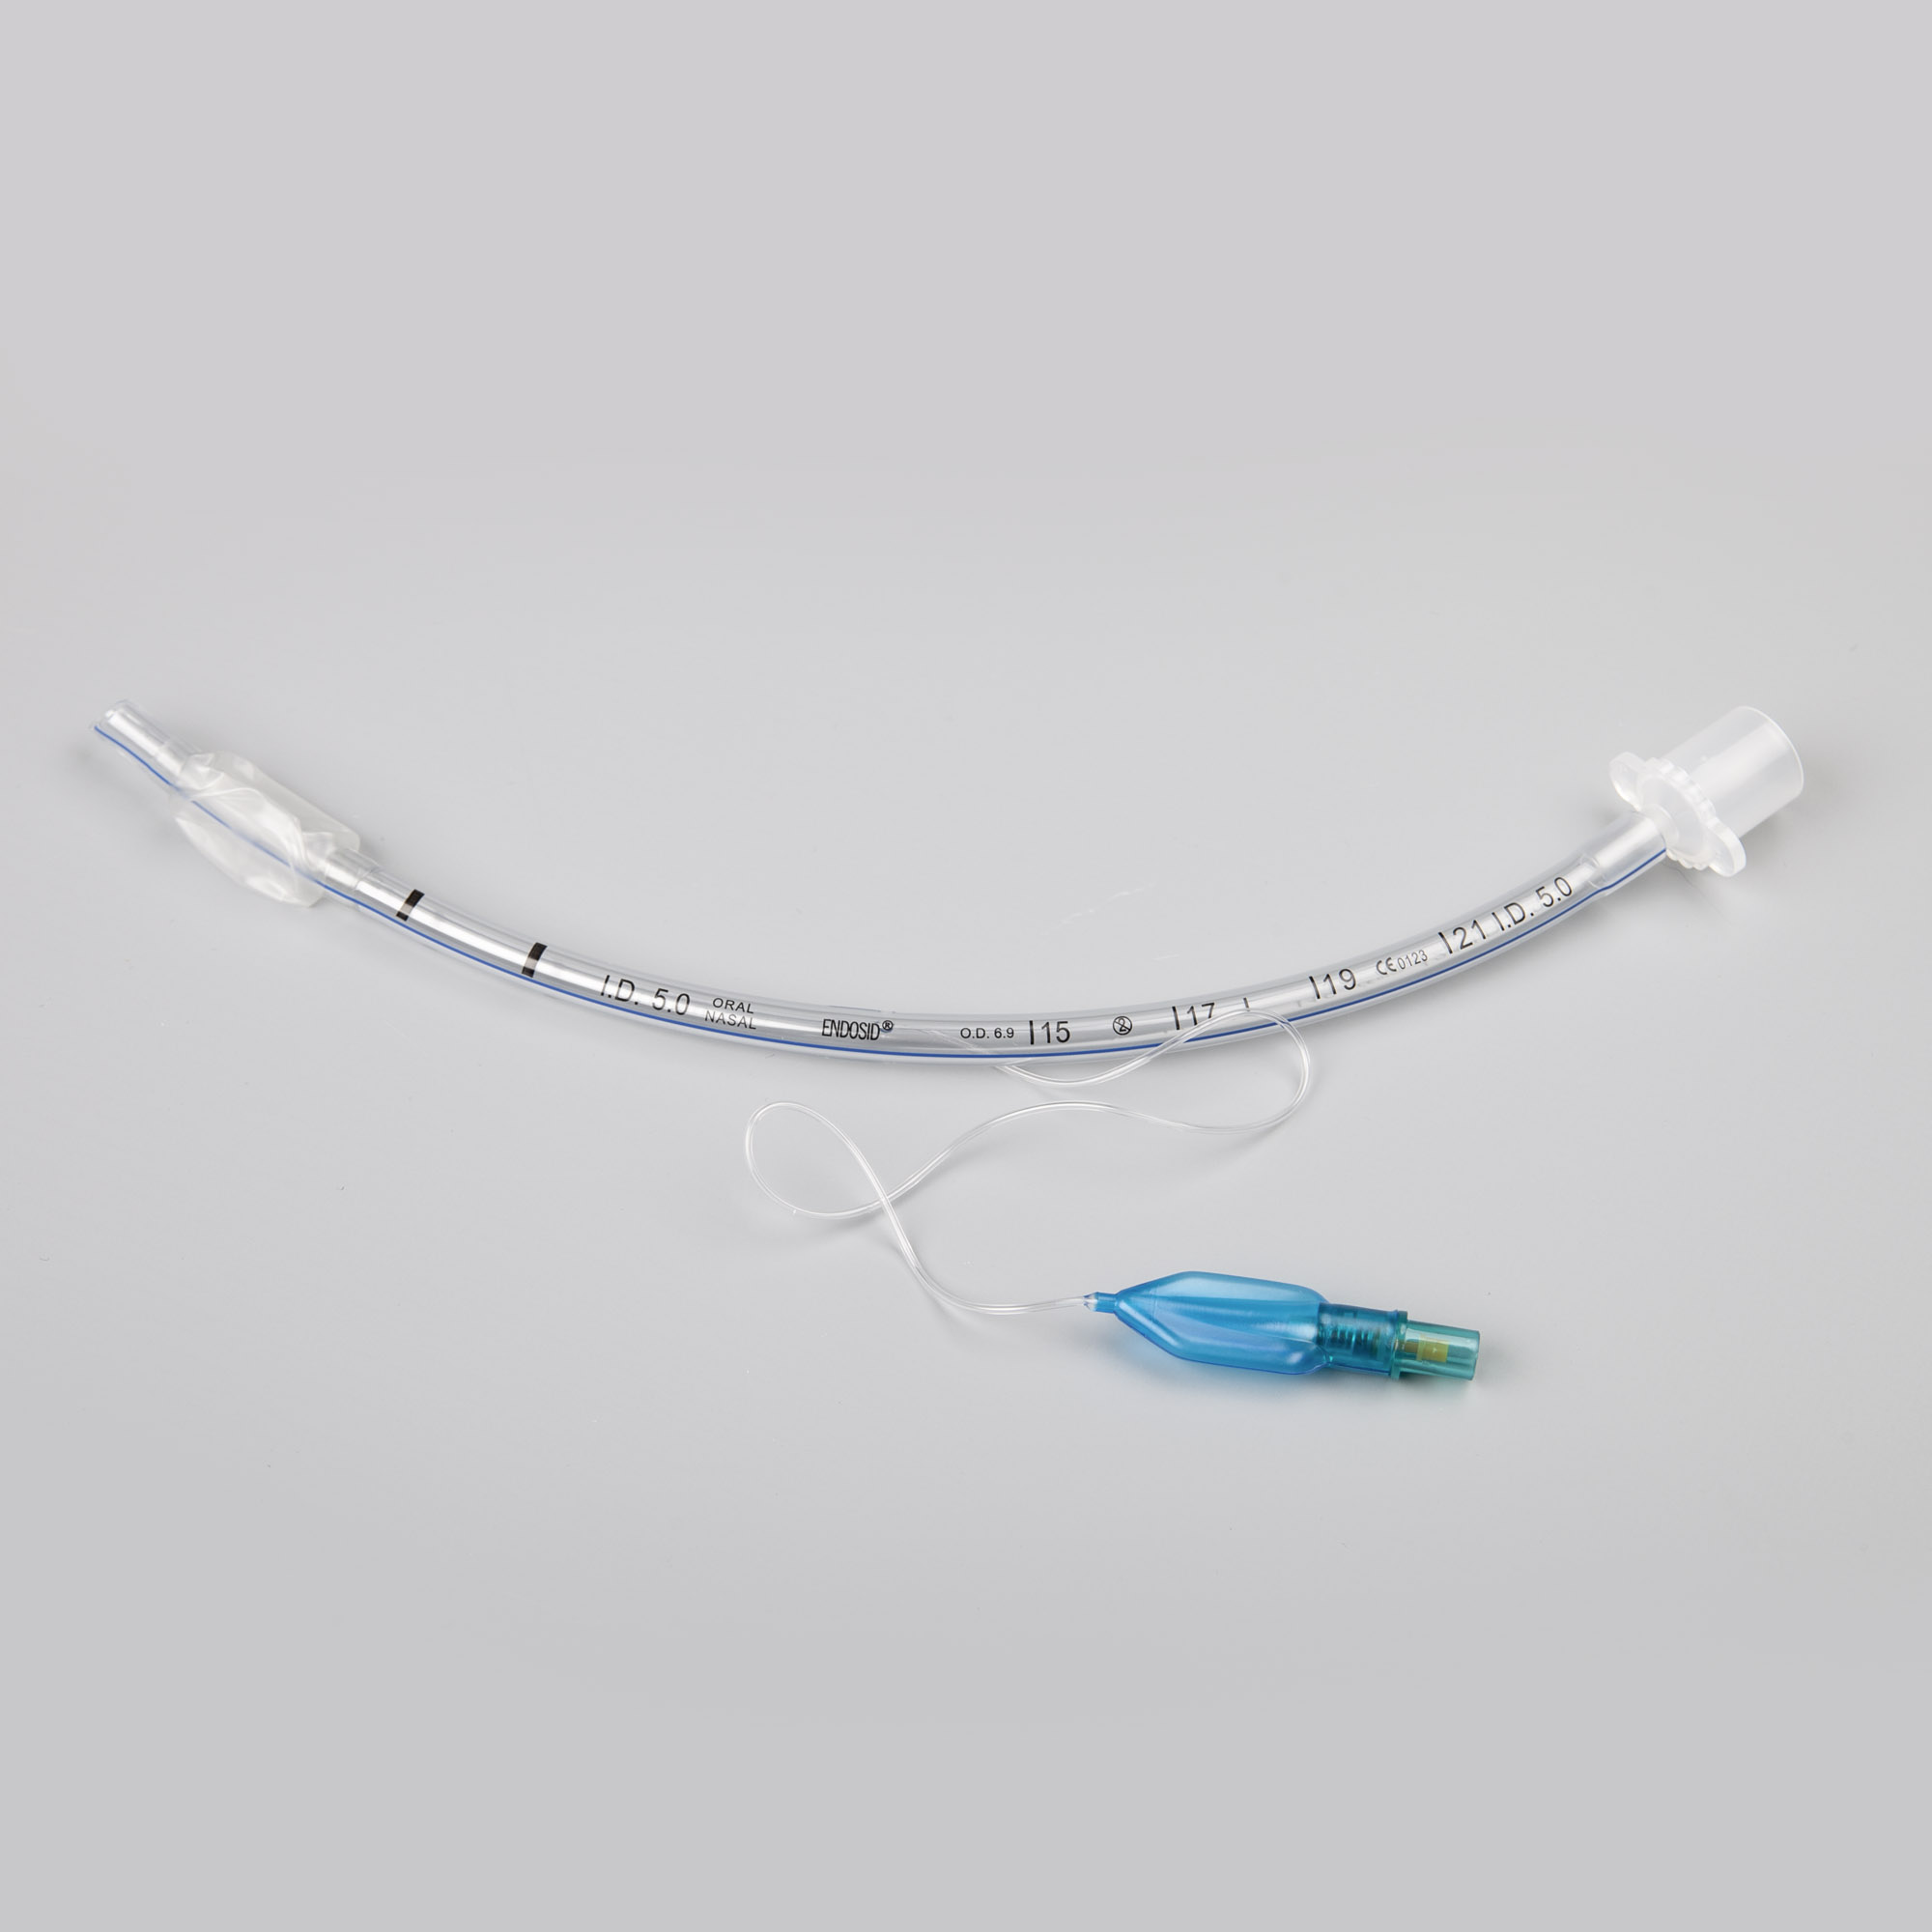 Endosid®-Tubus nasal/oral mit Cuff, Murphy-Auge und Mandrin I.D. 8,0 mm (CH 32)